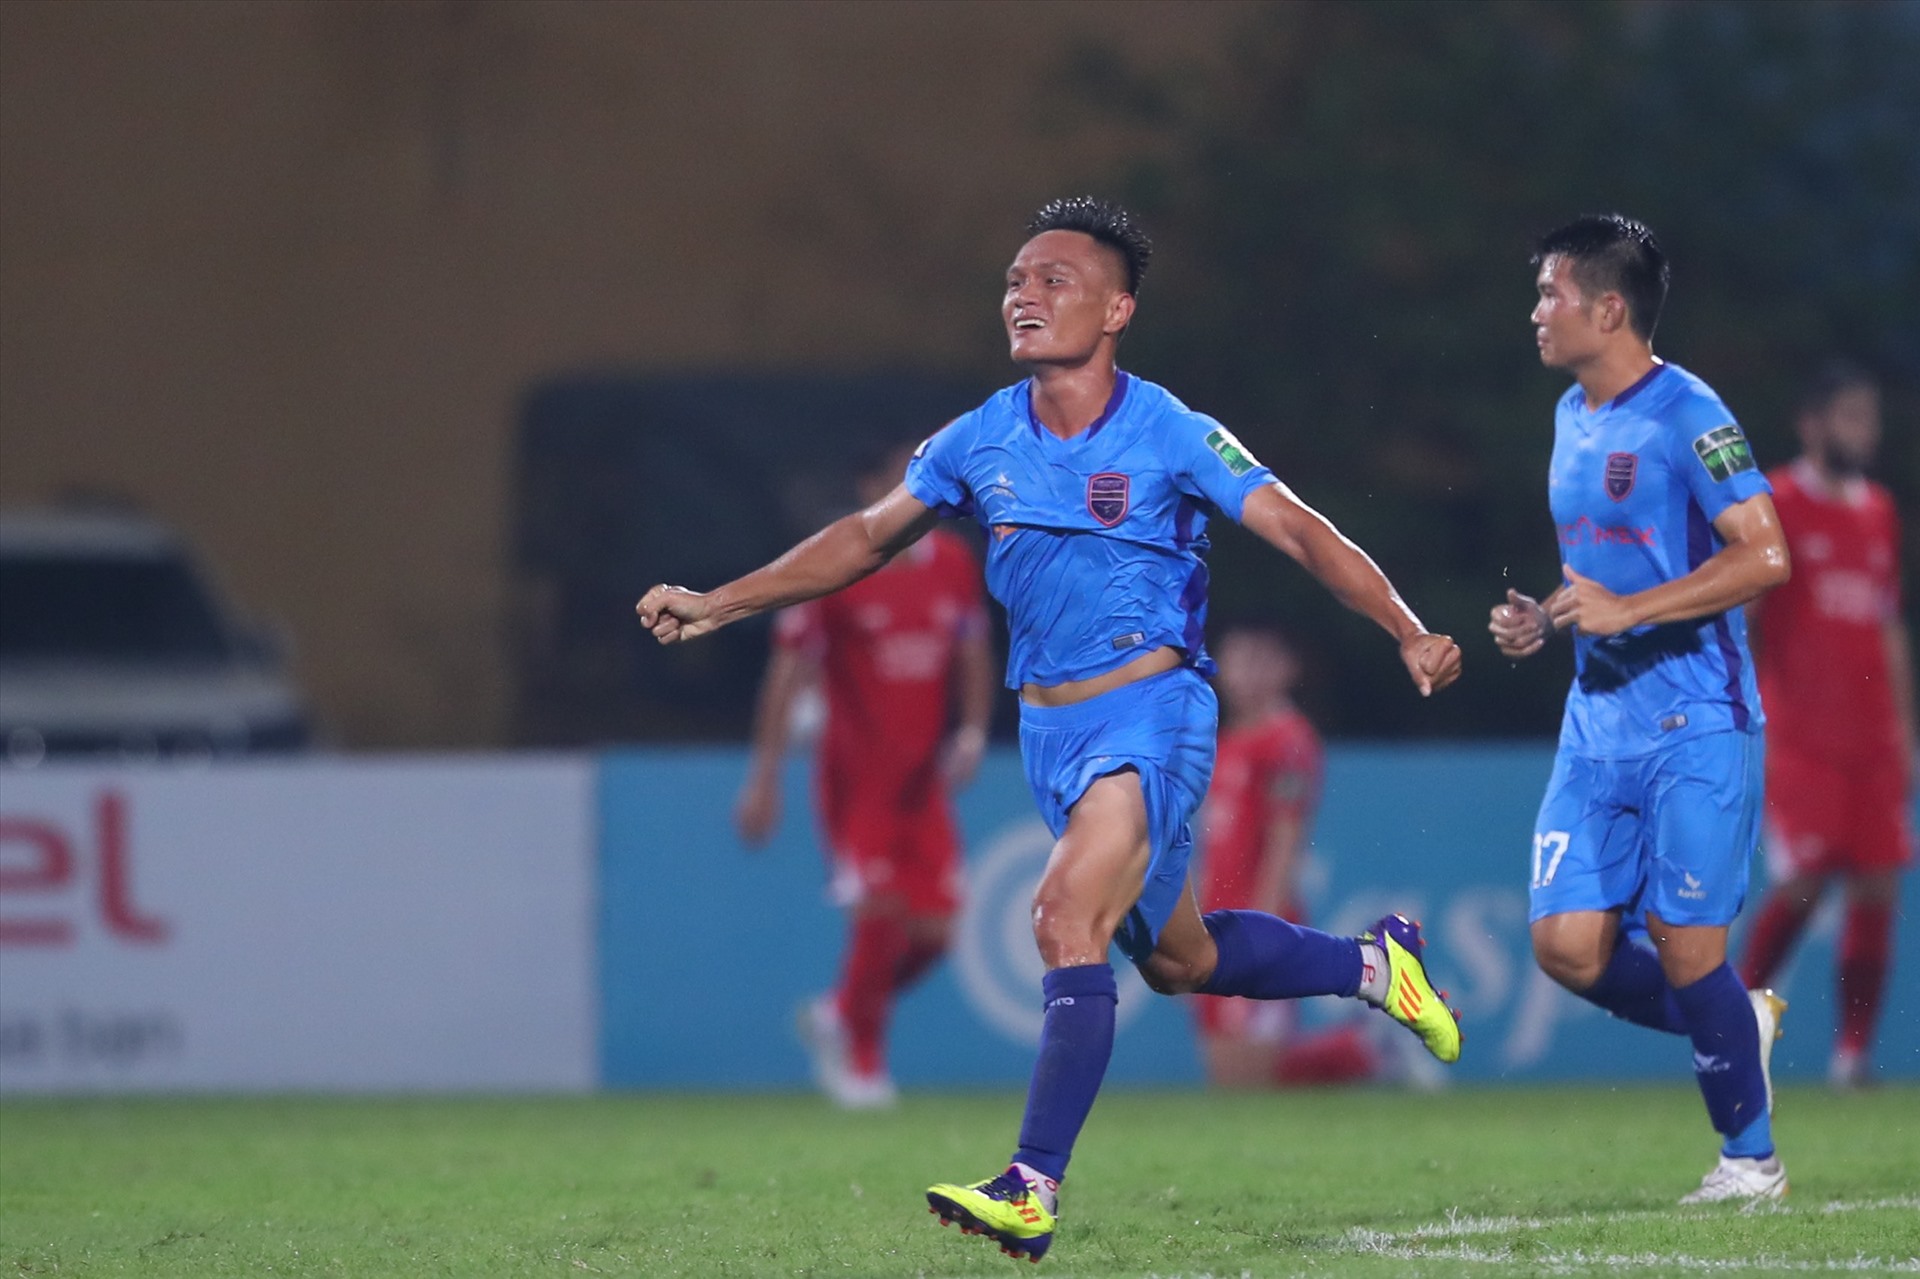 Hậu vệ Quang Hùng có bàn thắng đầu tiên kể từ khi trở lại với bóng đá chuyên nghiệp. Ảnh: Minh Dân 